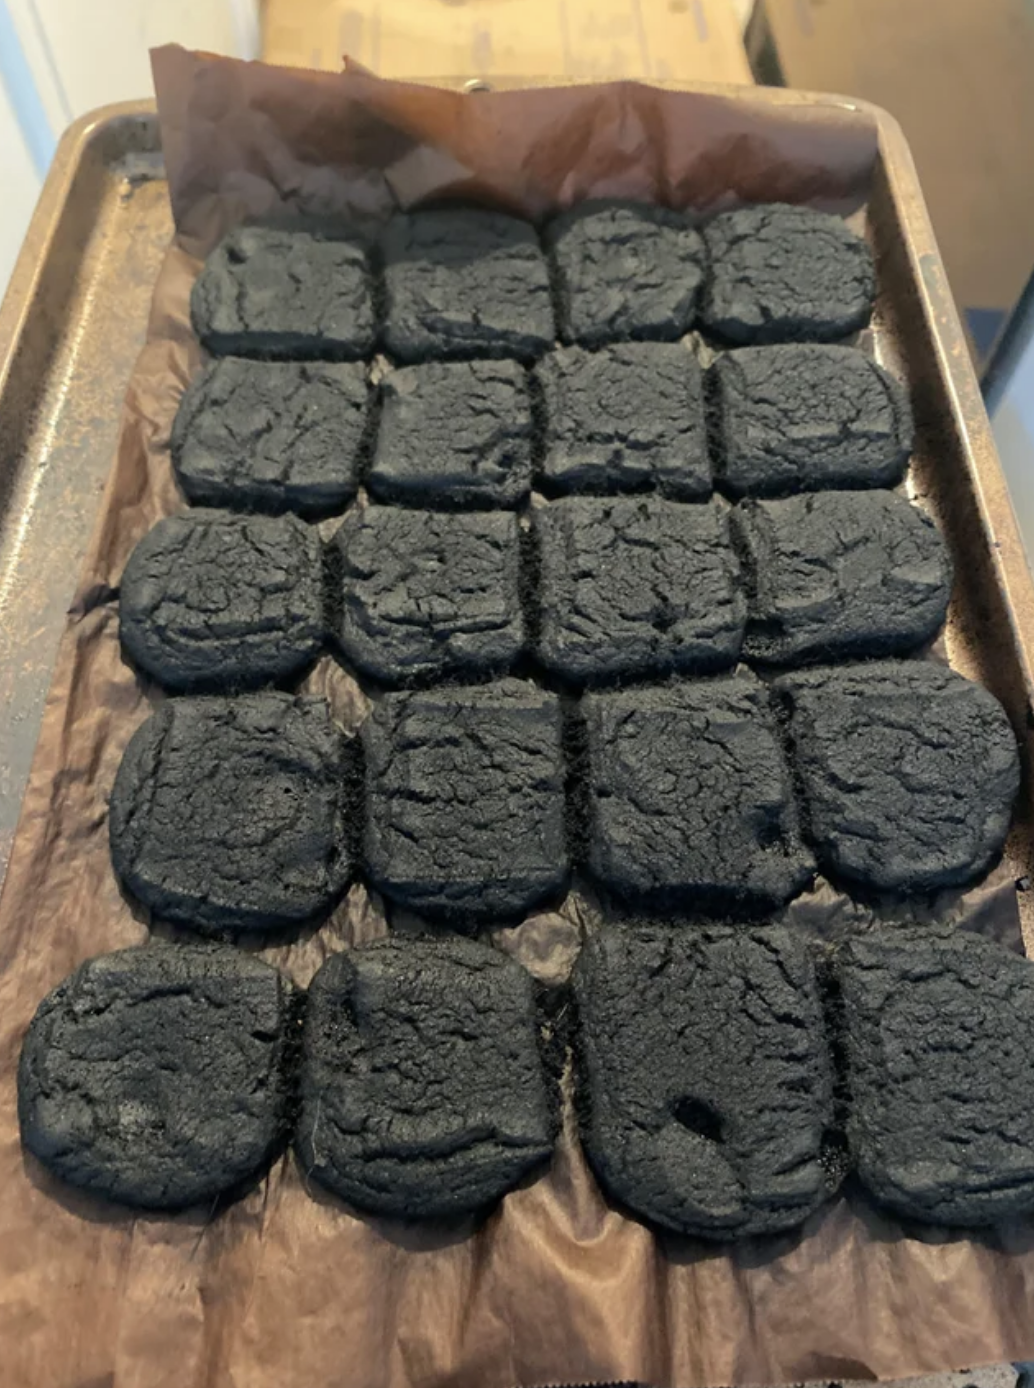 Burnt biscuits